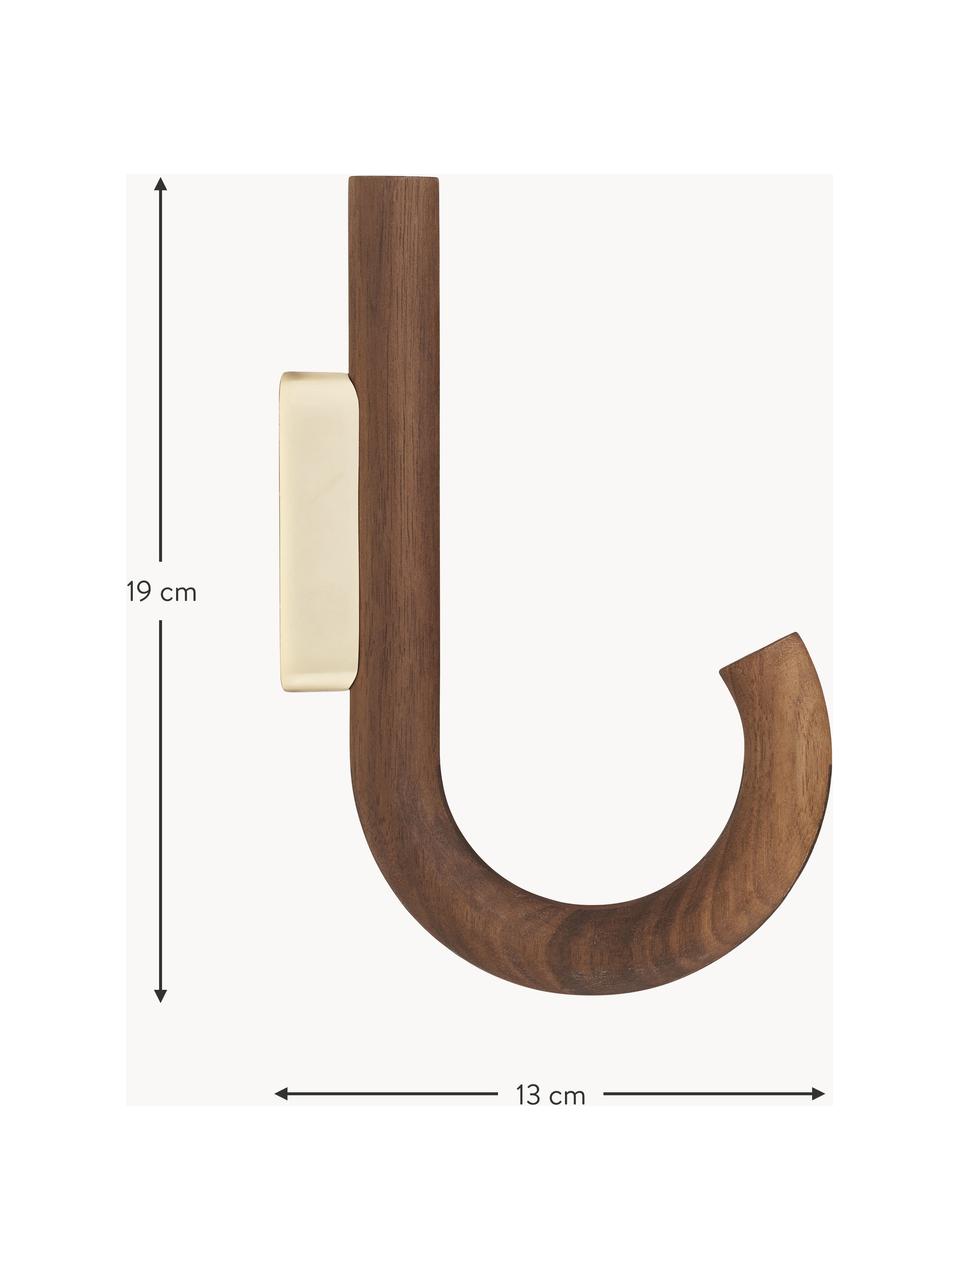 Nástěnný háček z ořechového dřeva Umbrella, různé velikosti, Ořechové dřevo, zlatá, Š 6 cm, V 13 cm